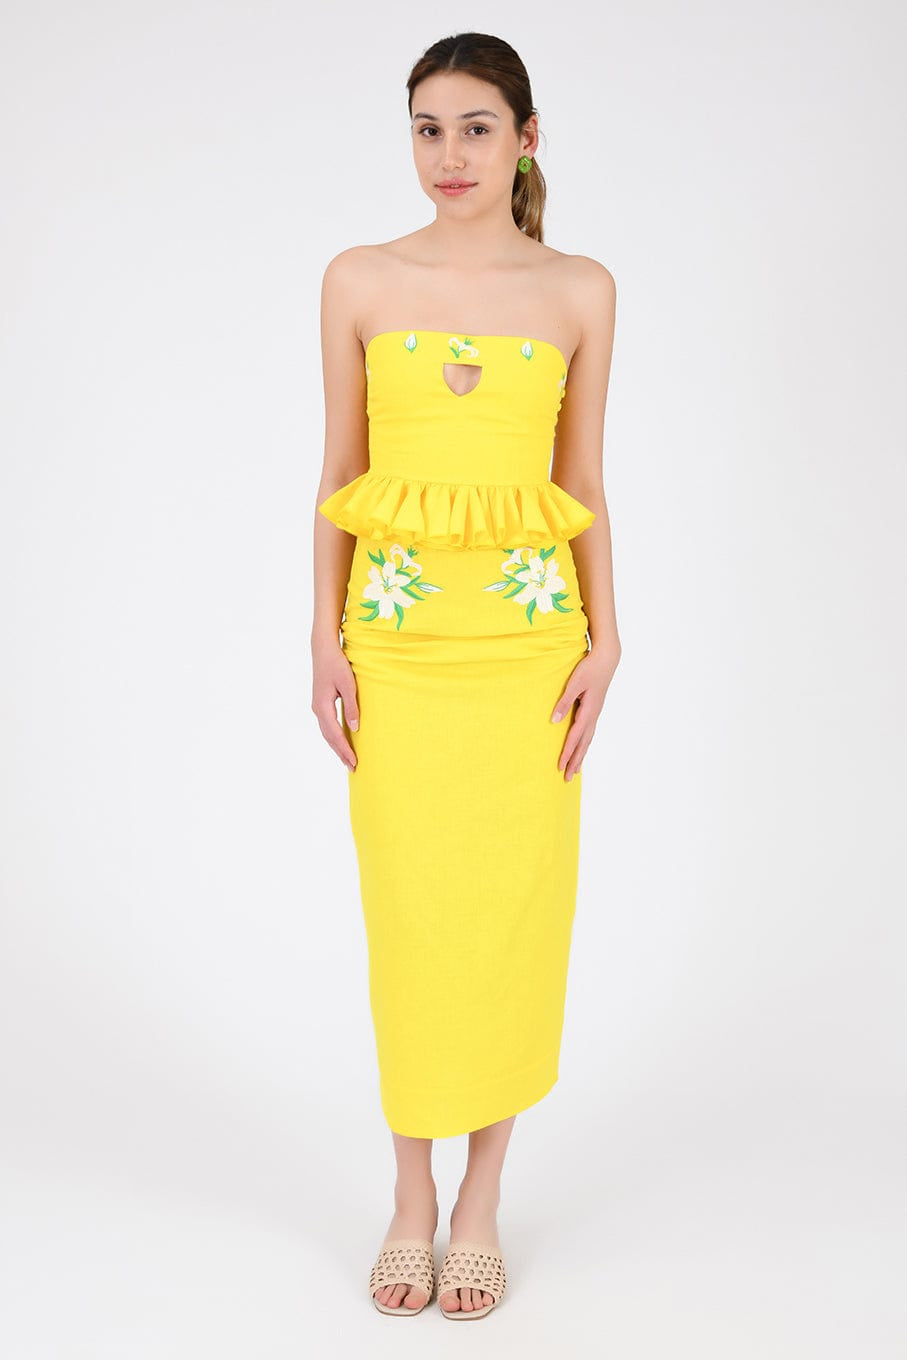 Fanm Mon 2 Piece Skirt Set L / Bright Yellow Arina Wanga